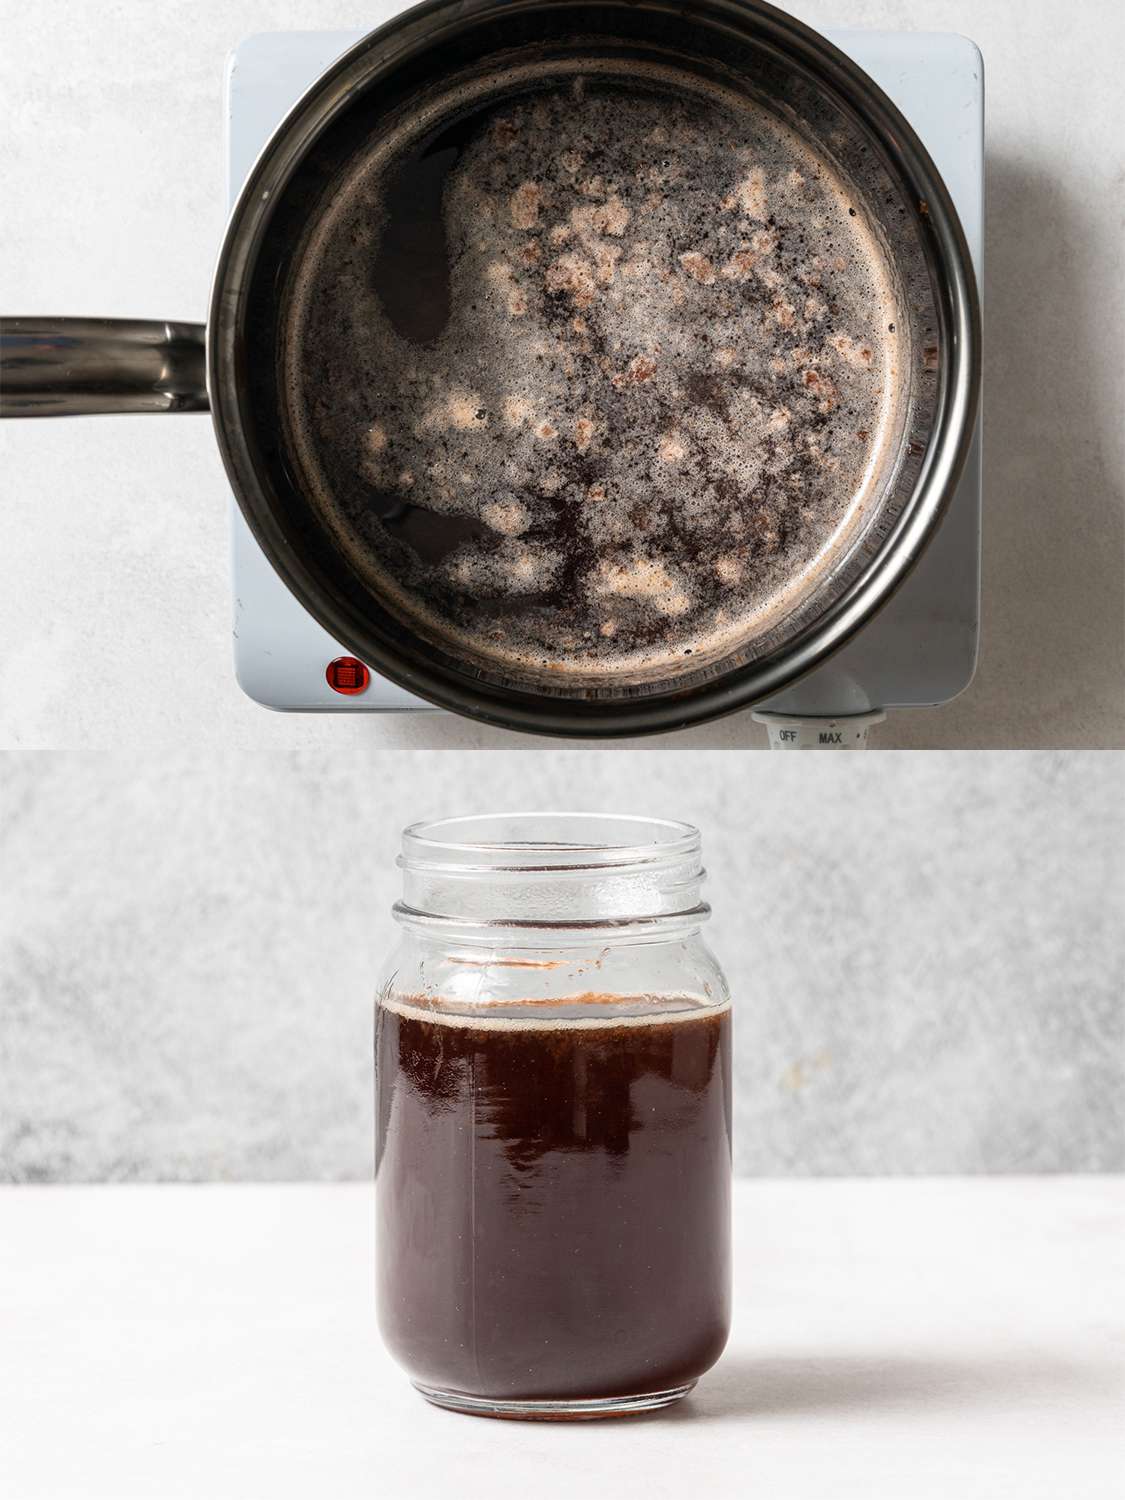 两个影像拼贴。上面的图片显示了保留的樱桃汁，水和糖在不锈钢炖锅里沸腾。下面的图片显示的是现在已经冷却的樱桃糖浆在一个单独的玻璃瓶里。